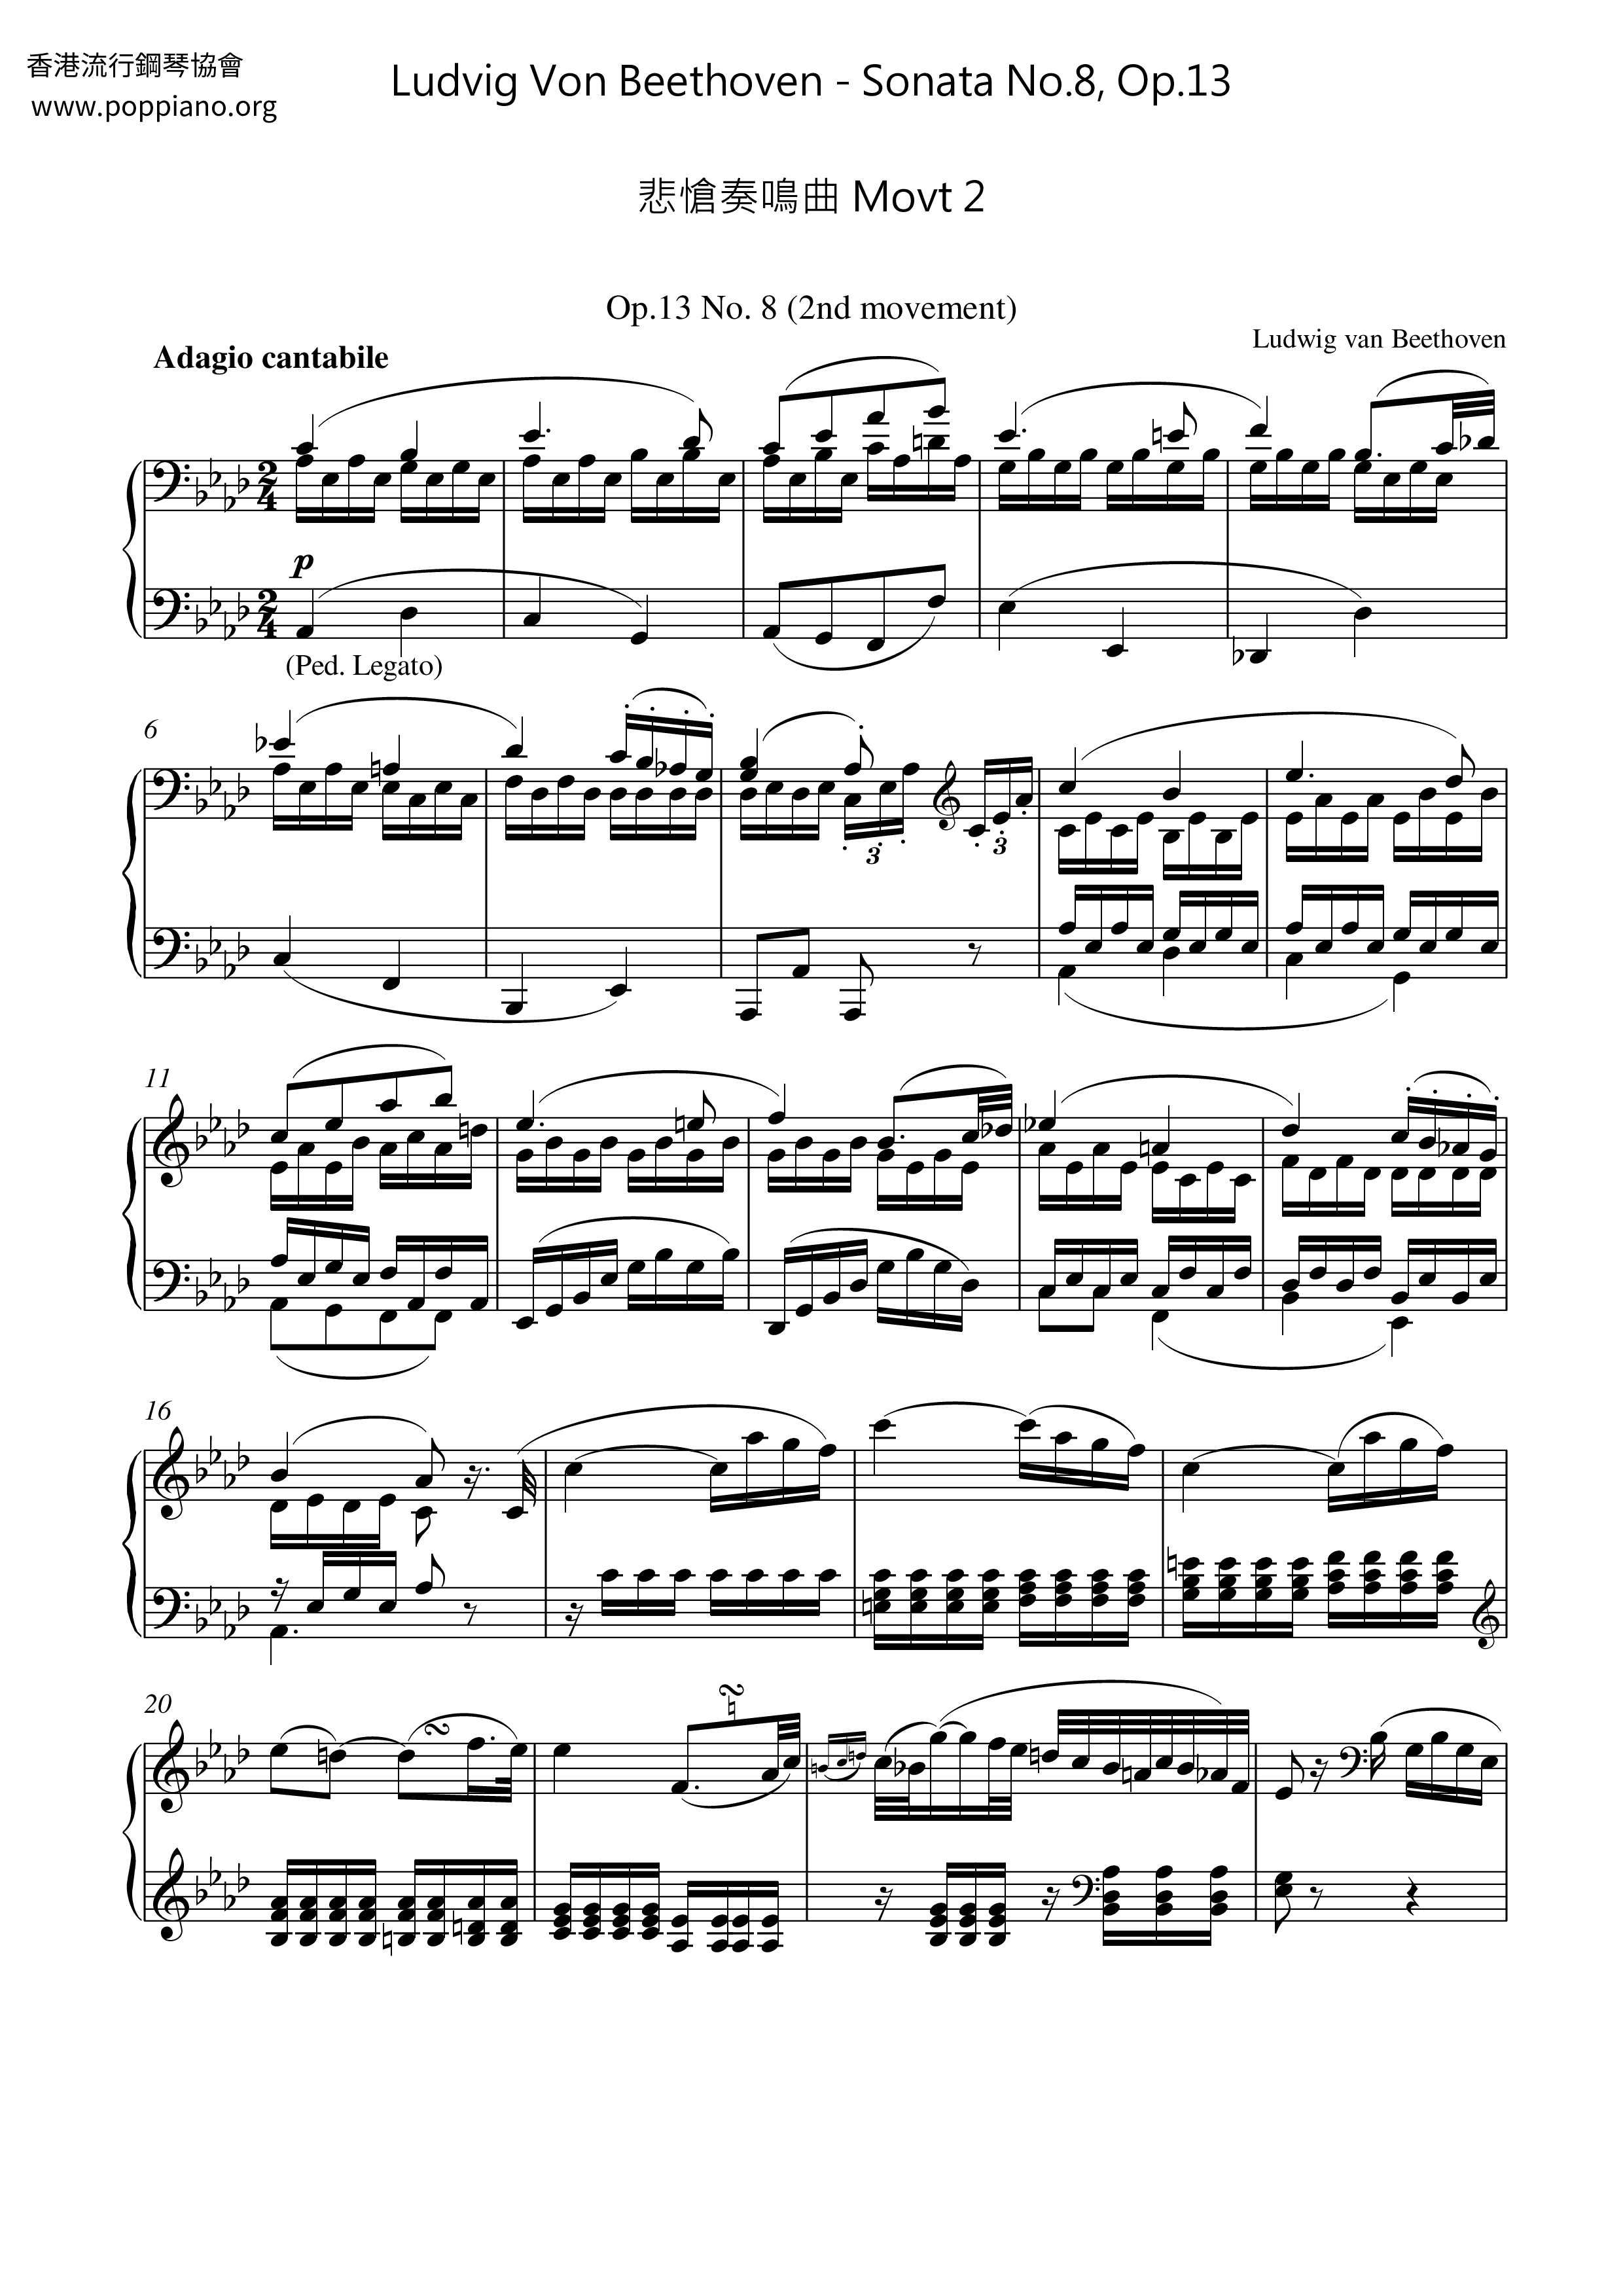 Sonata No.8, Op.13 Tragedy Sonata Movt 2 Score